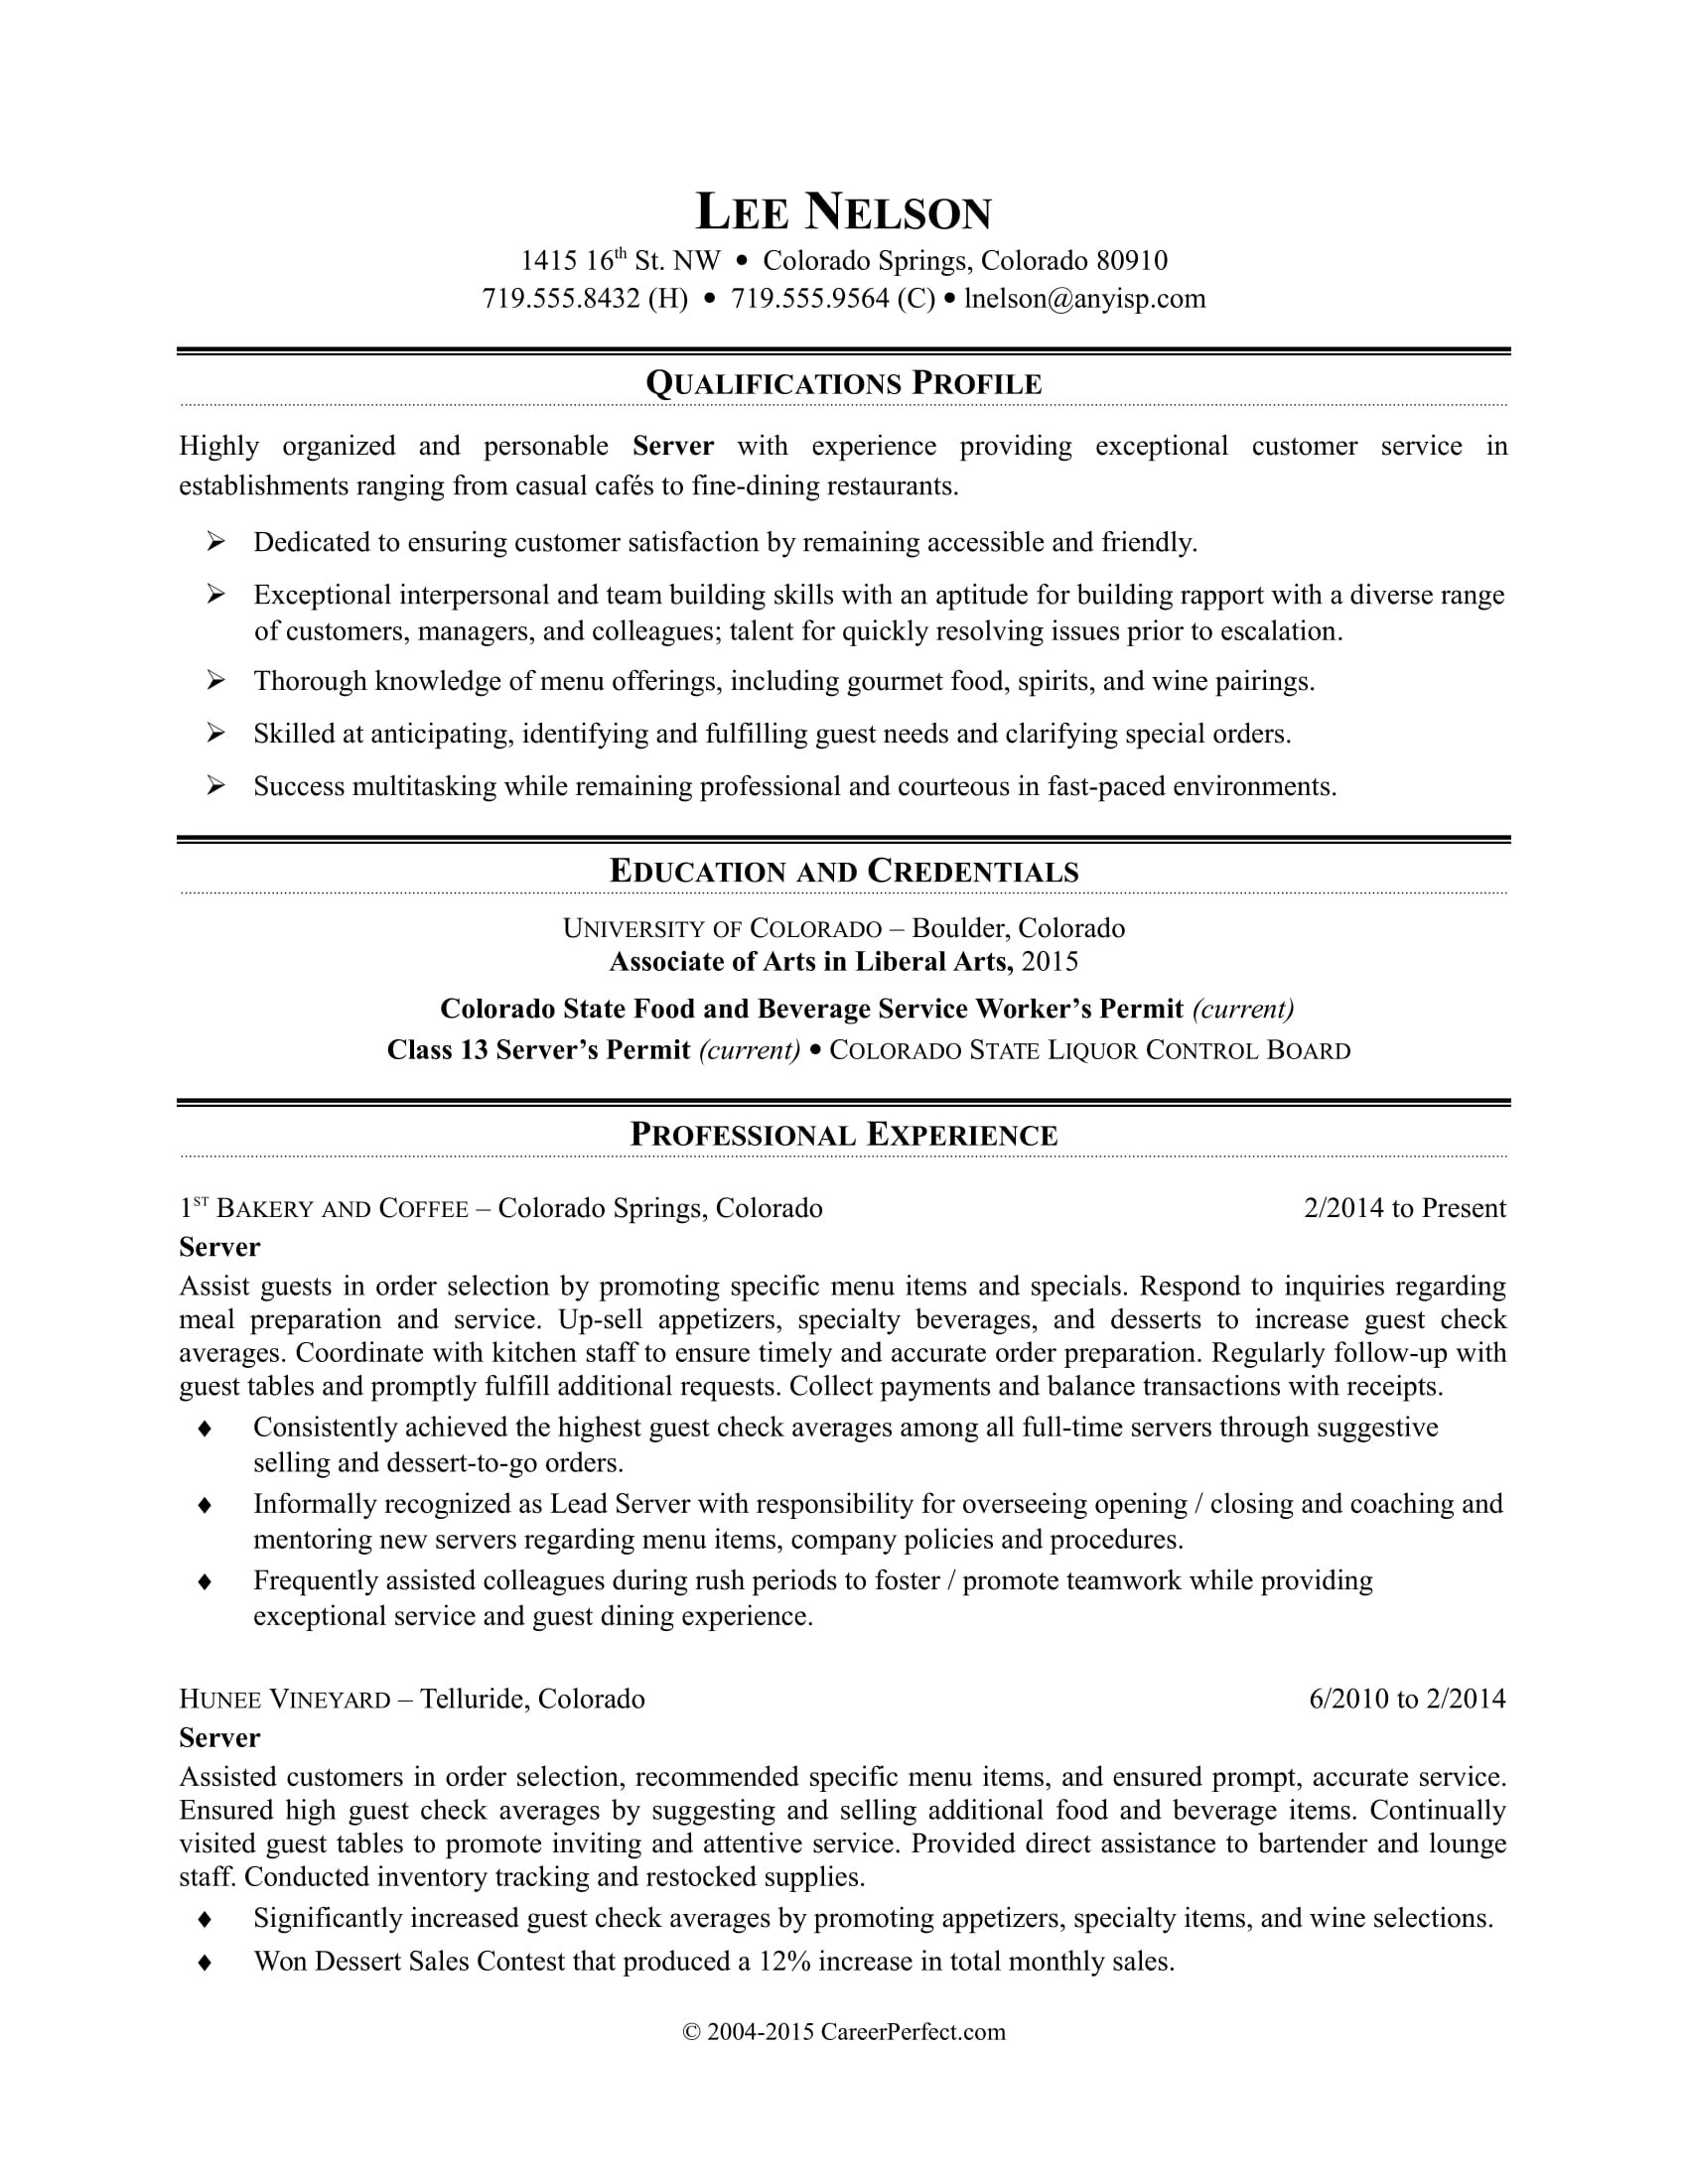 Sample Resume for Customer Service Representative In Restaurant Restaurant Server Resume Sample Monster.com